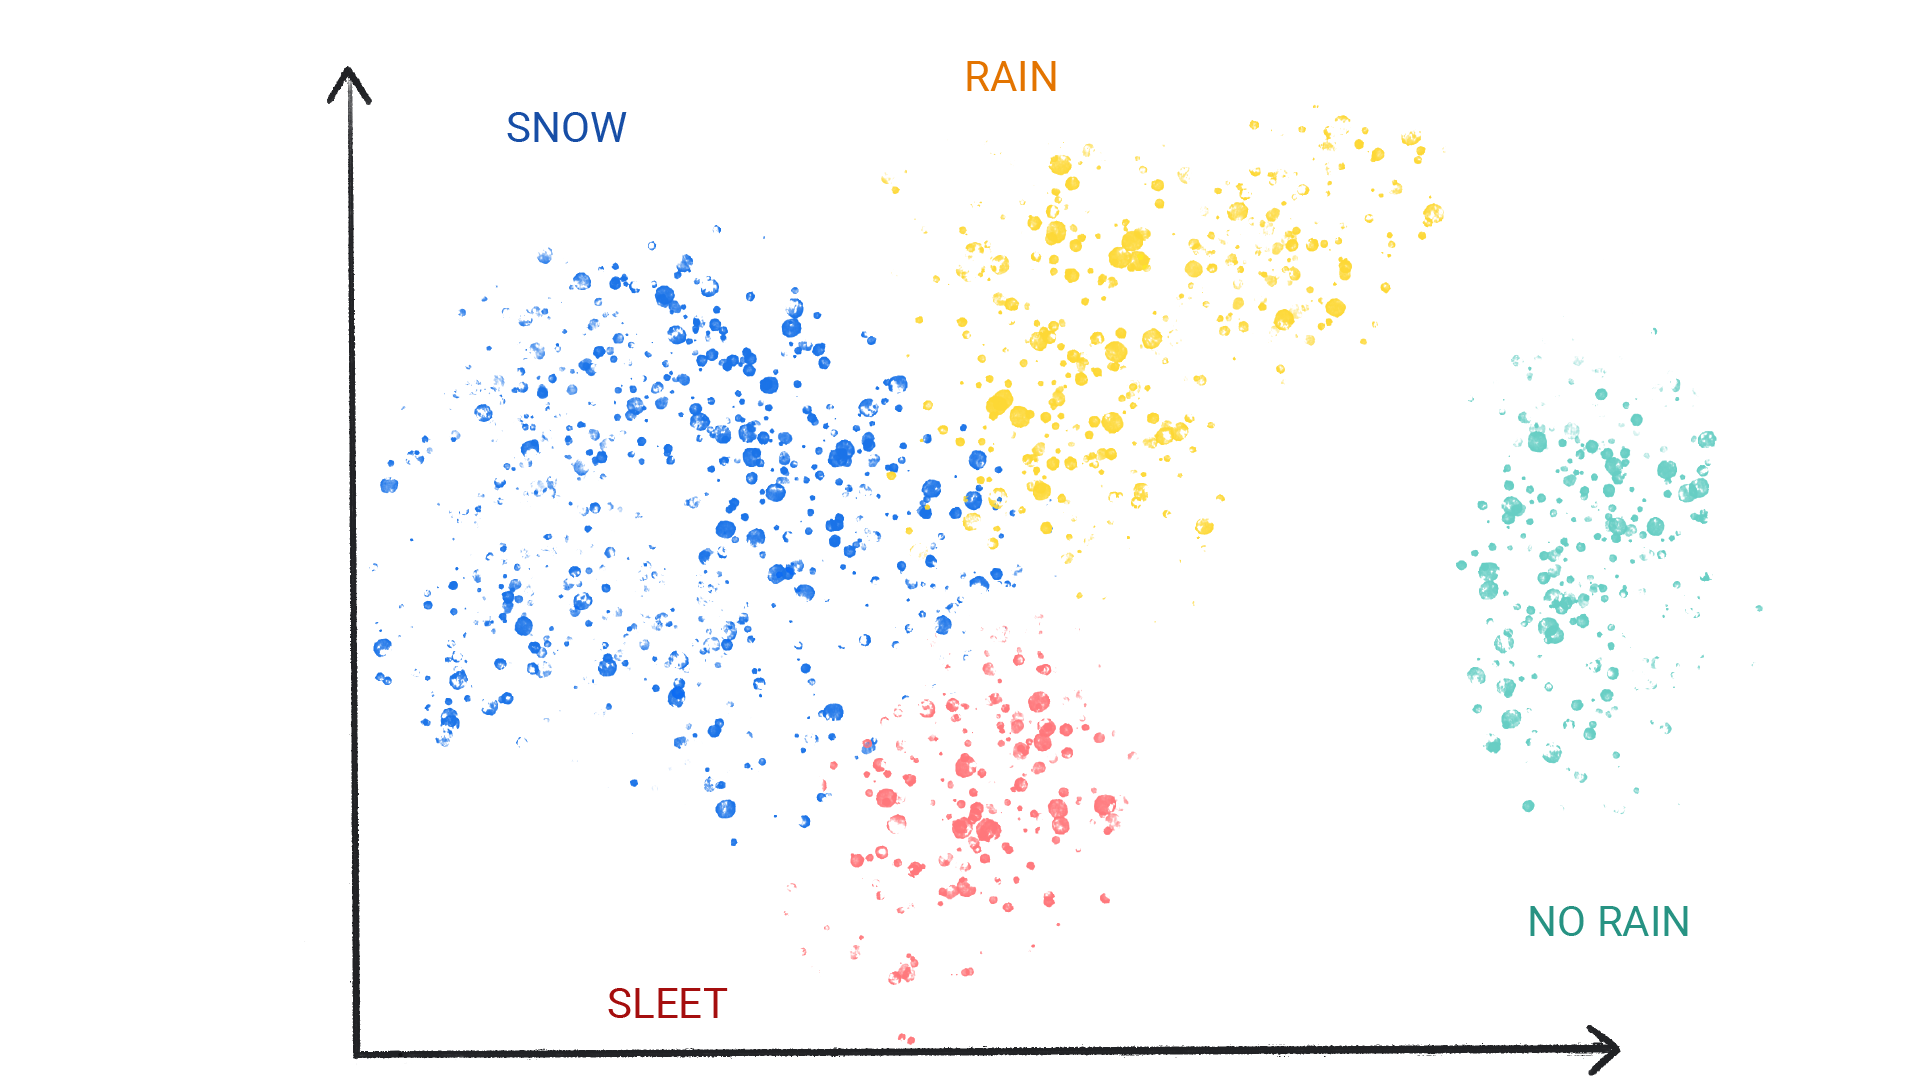 รูปภาพแสดงจุดสีเป็นกลุ่มที่มีป้ายกำกับหิมะ ฝน ลูกเห็บ และไม่มีฝนตก